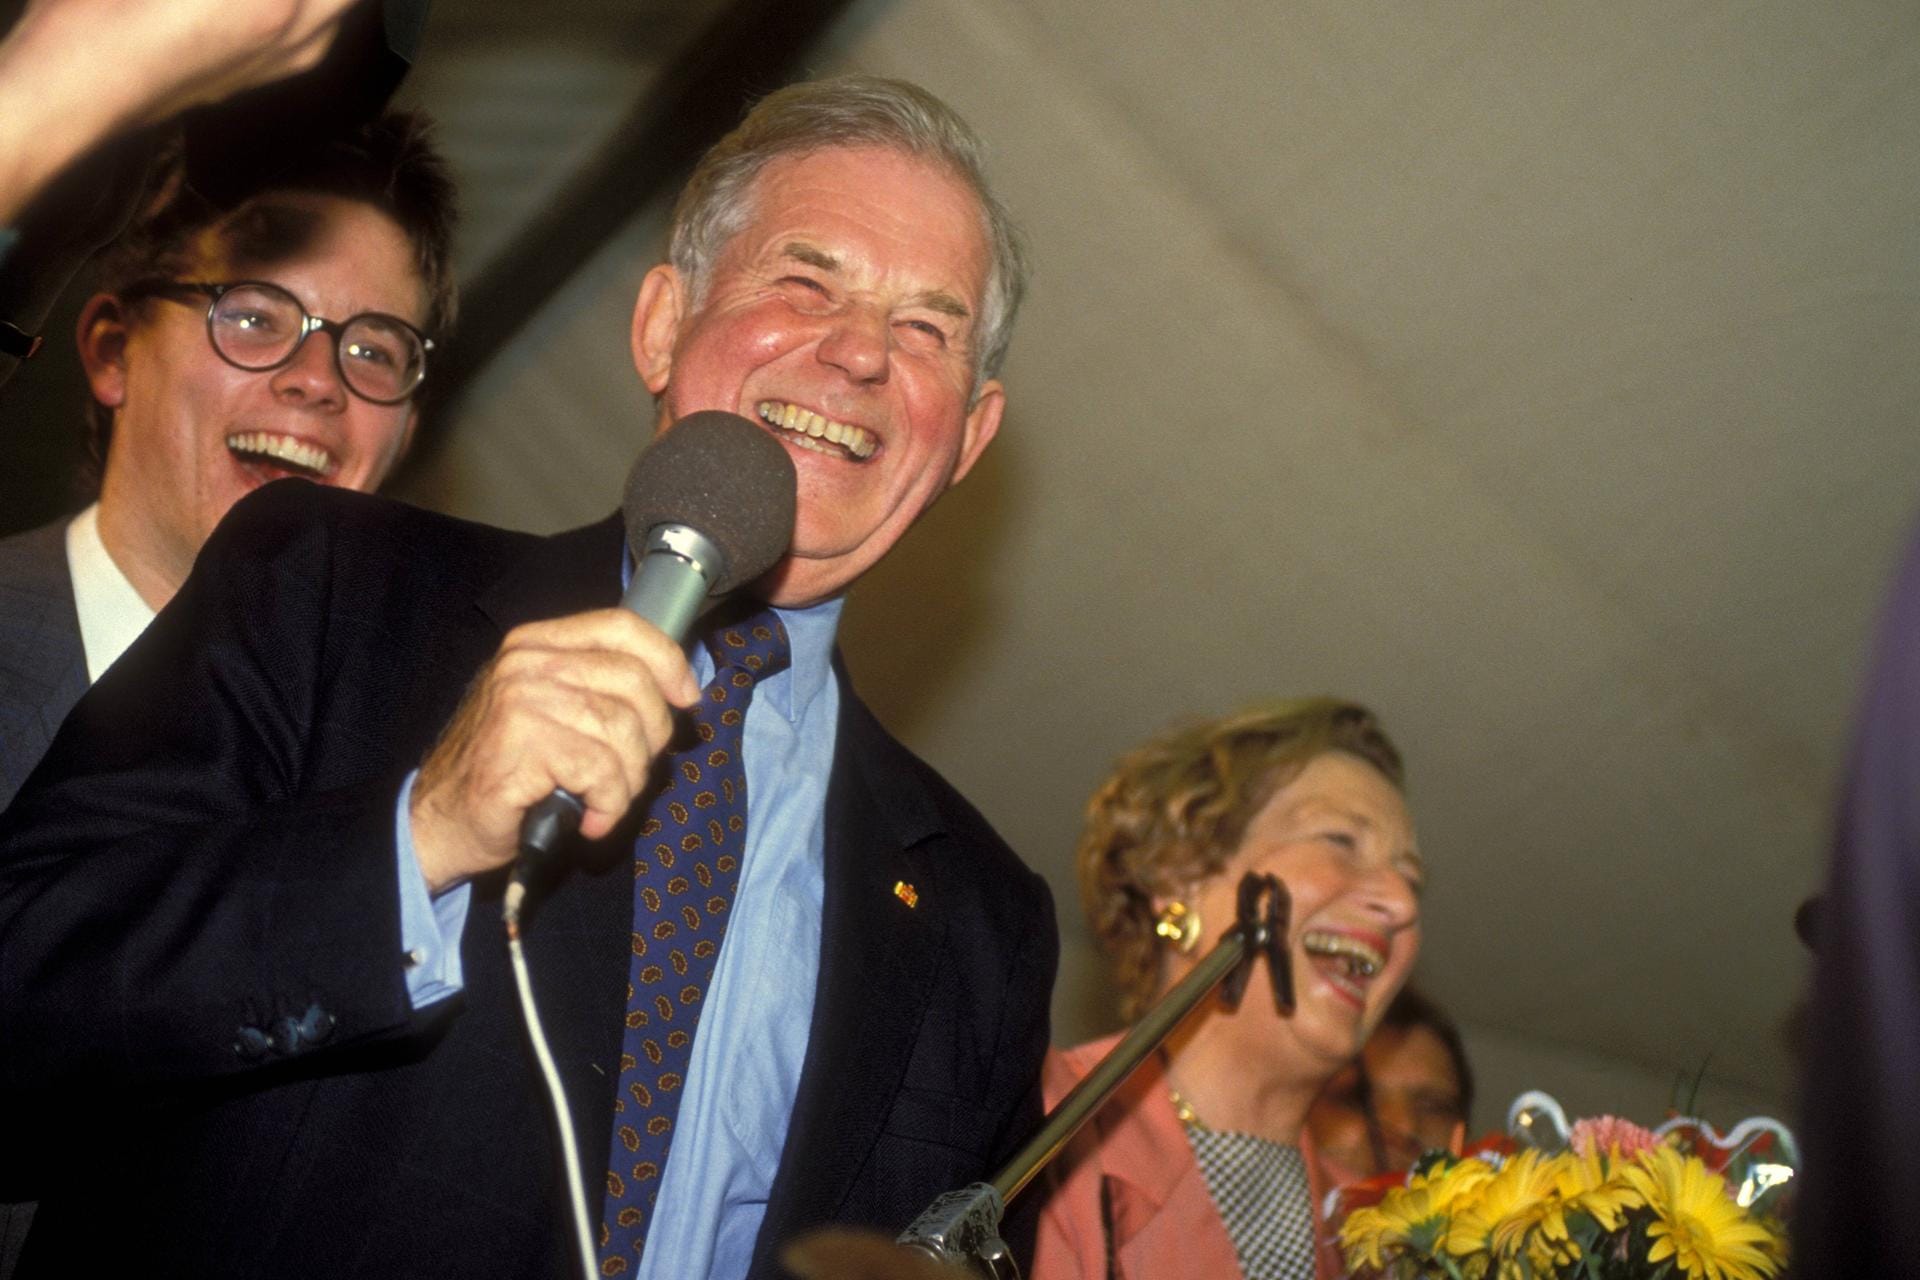 Kurt Biedenkopf nach seinem Sieg bei der sächsischen Landtagswahl im Oktober 1990: Er wird der erste Ministerpräsident Sachsens nach der Wiedervereinigung. Er erarbeitet sich den Spitznamen "König Kurt".